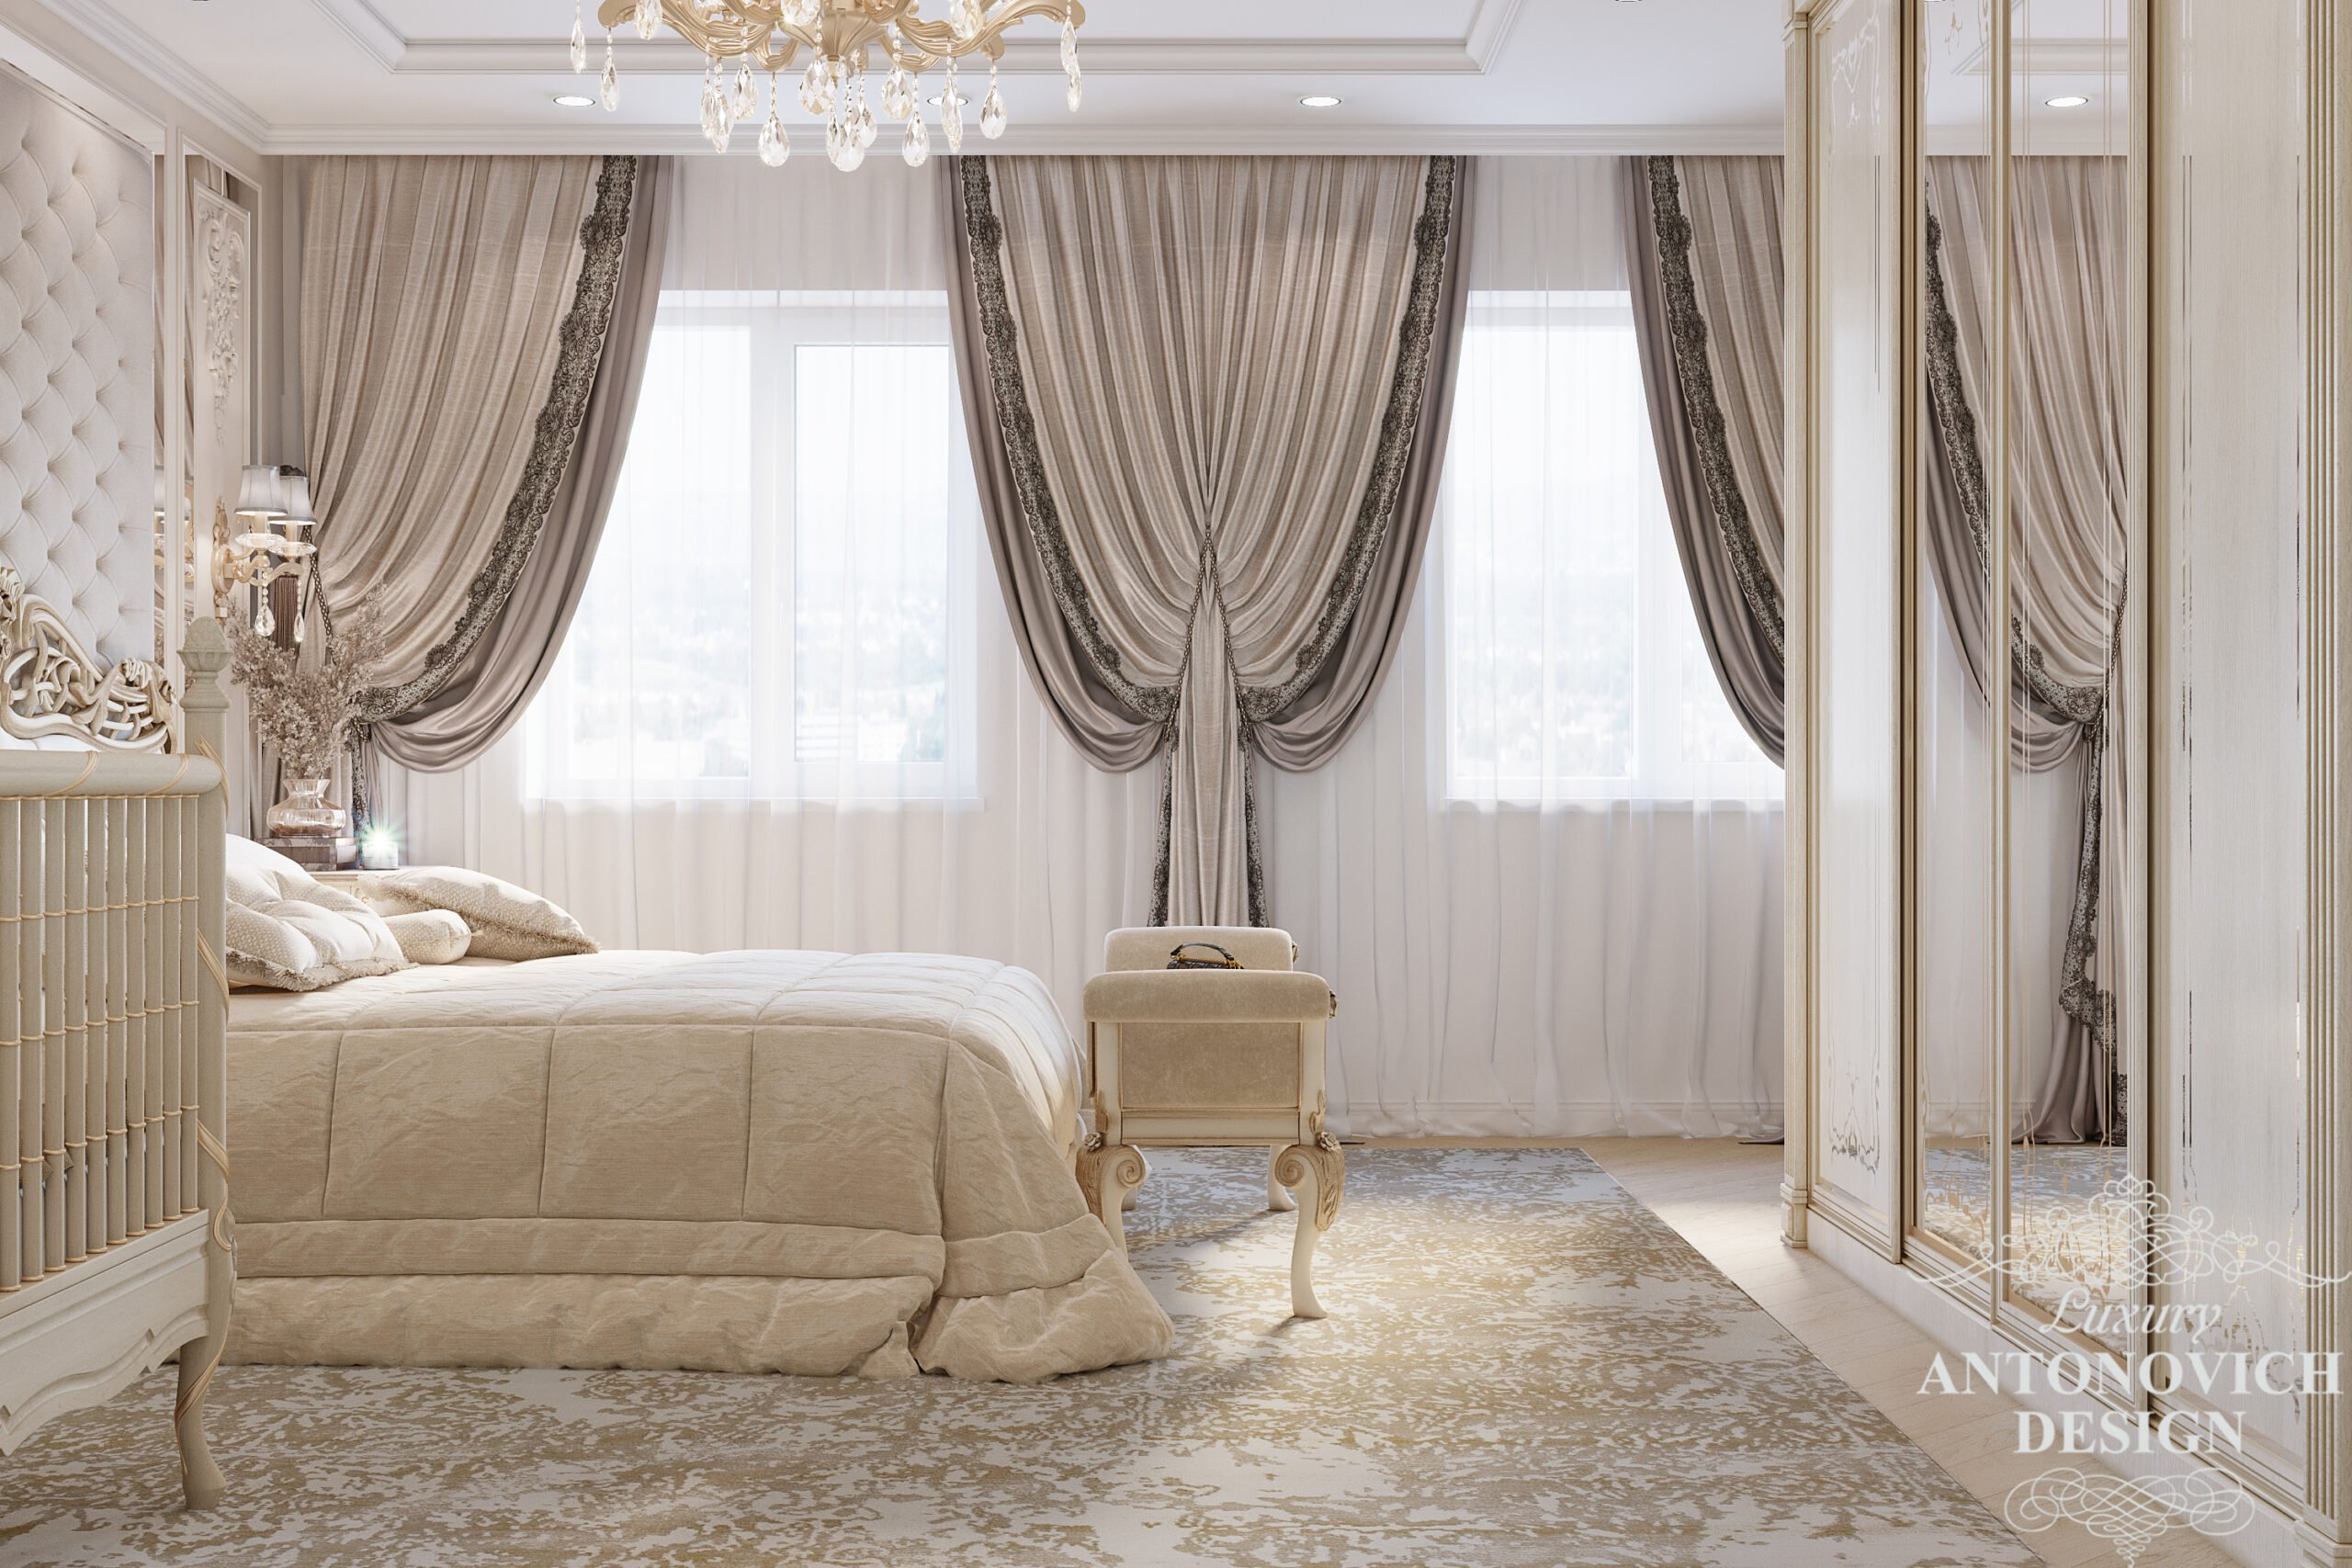 Витончений текстиль в ніжних нейтральних відтінках в дизайні спальні в стилі нової класики в авторському проекті будинку